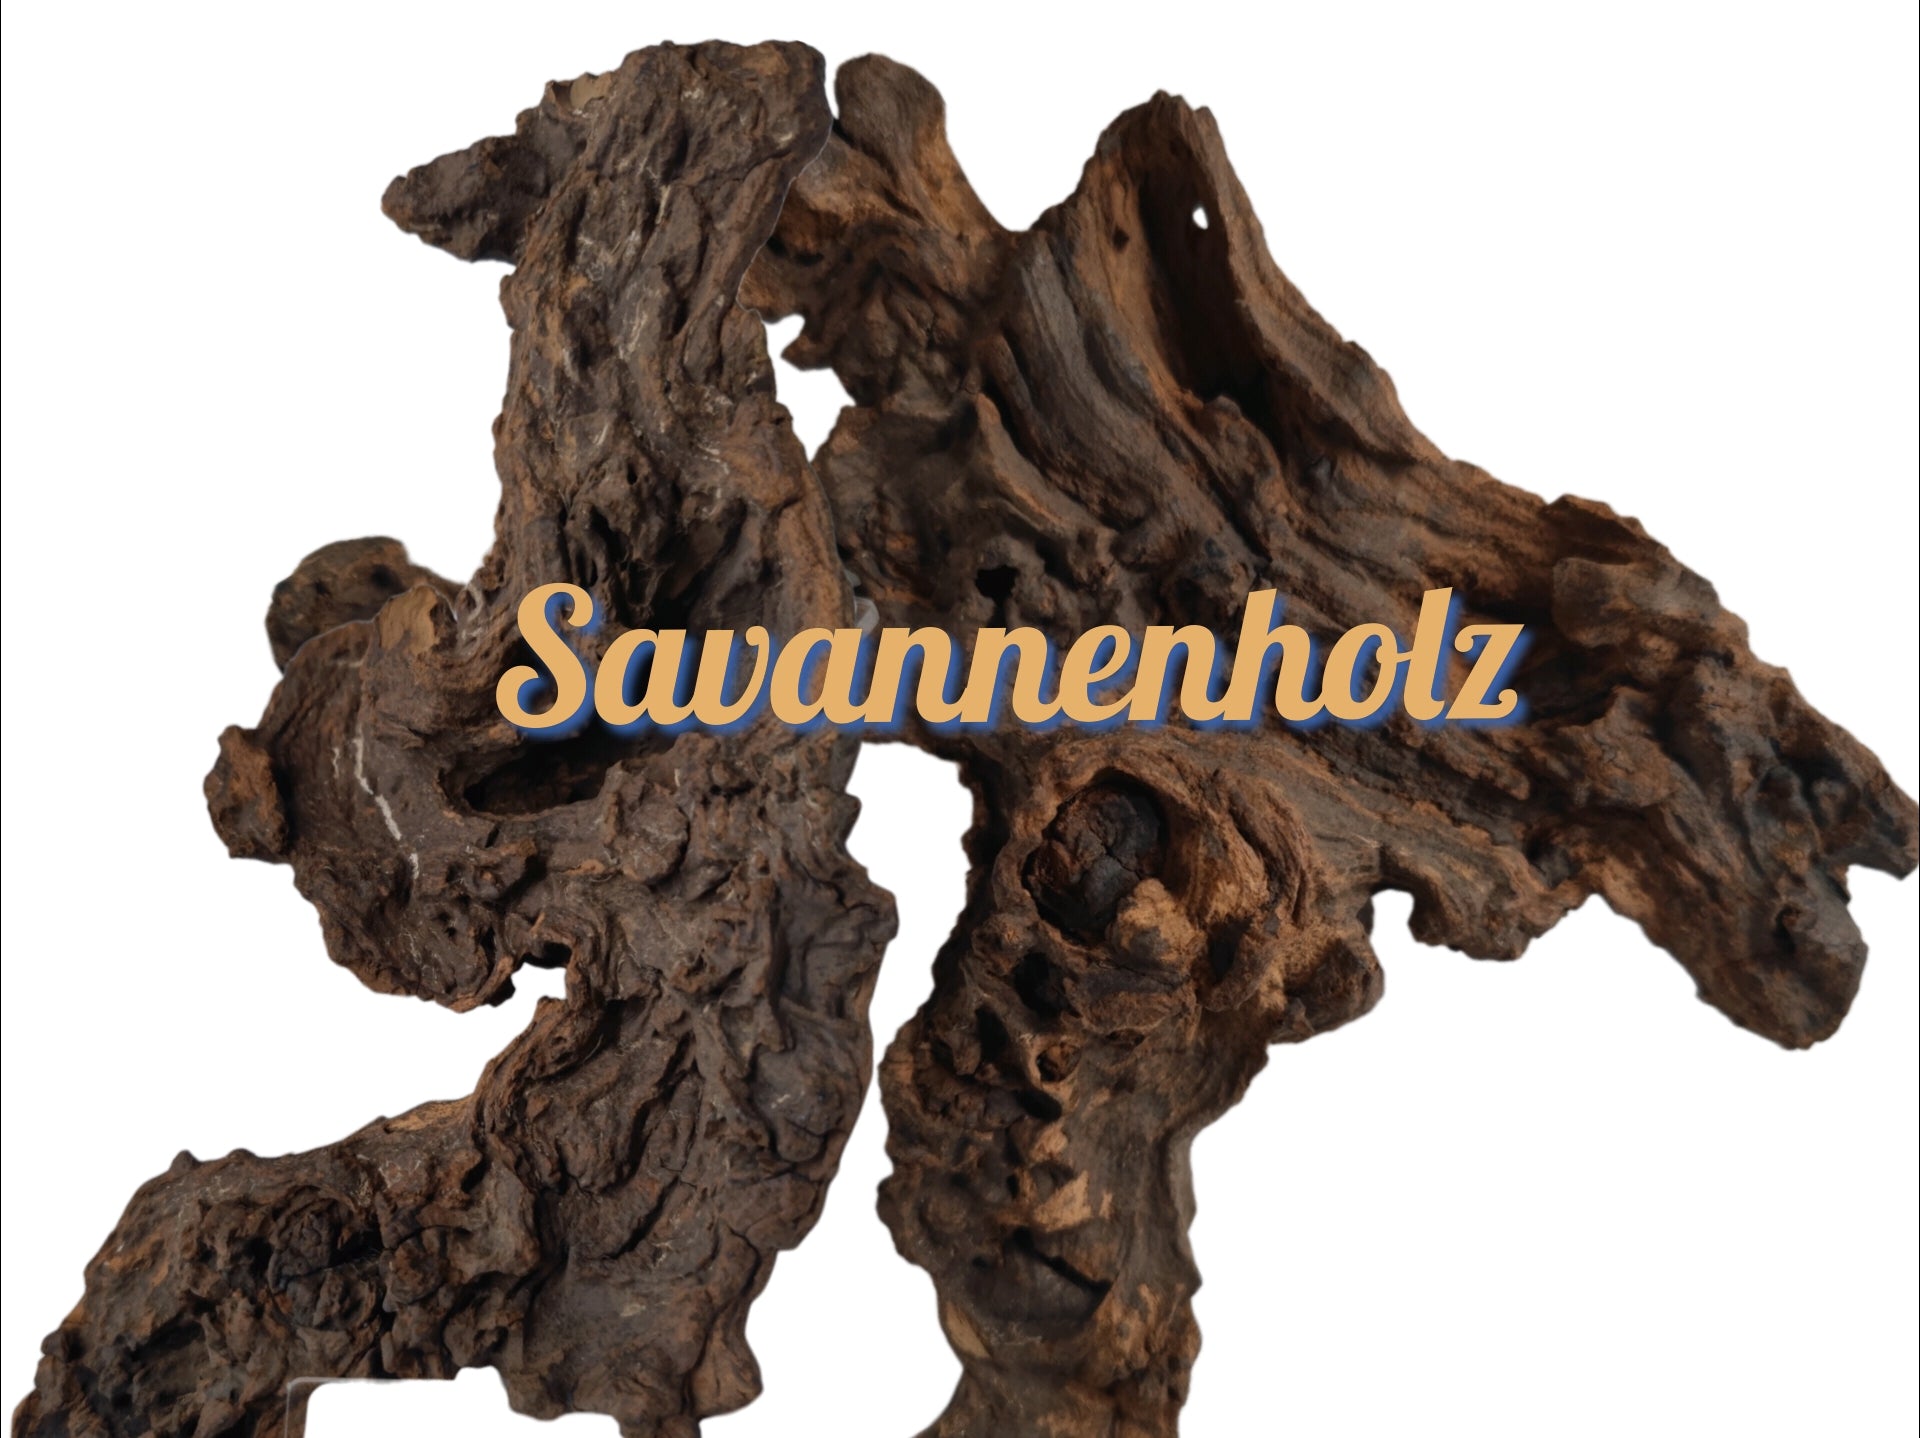 Savanna wood – Aquakallax